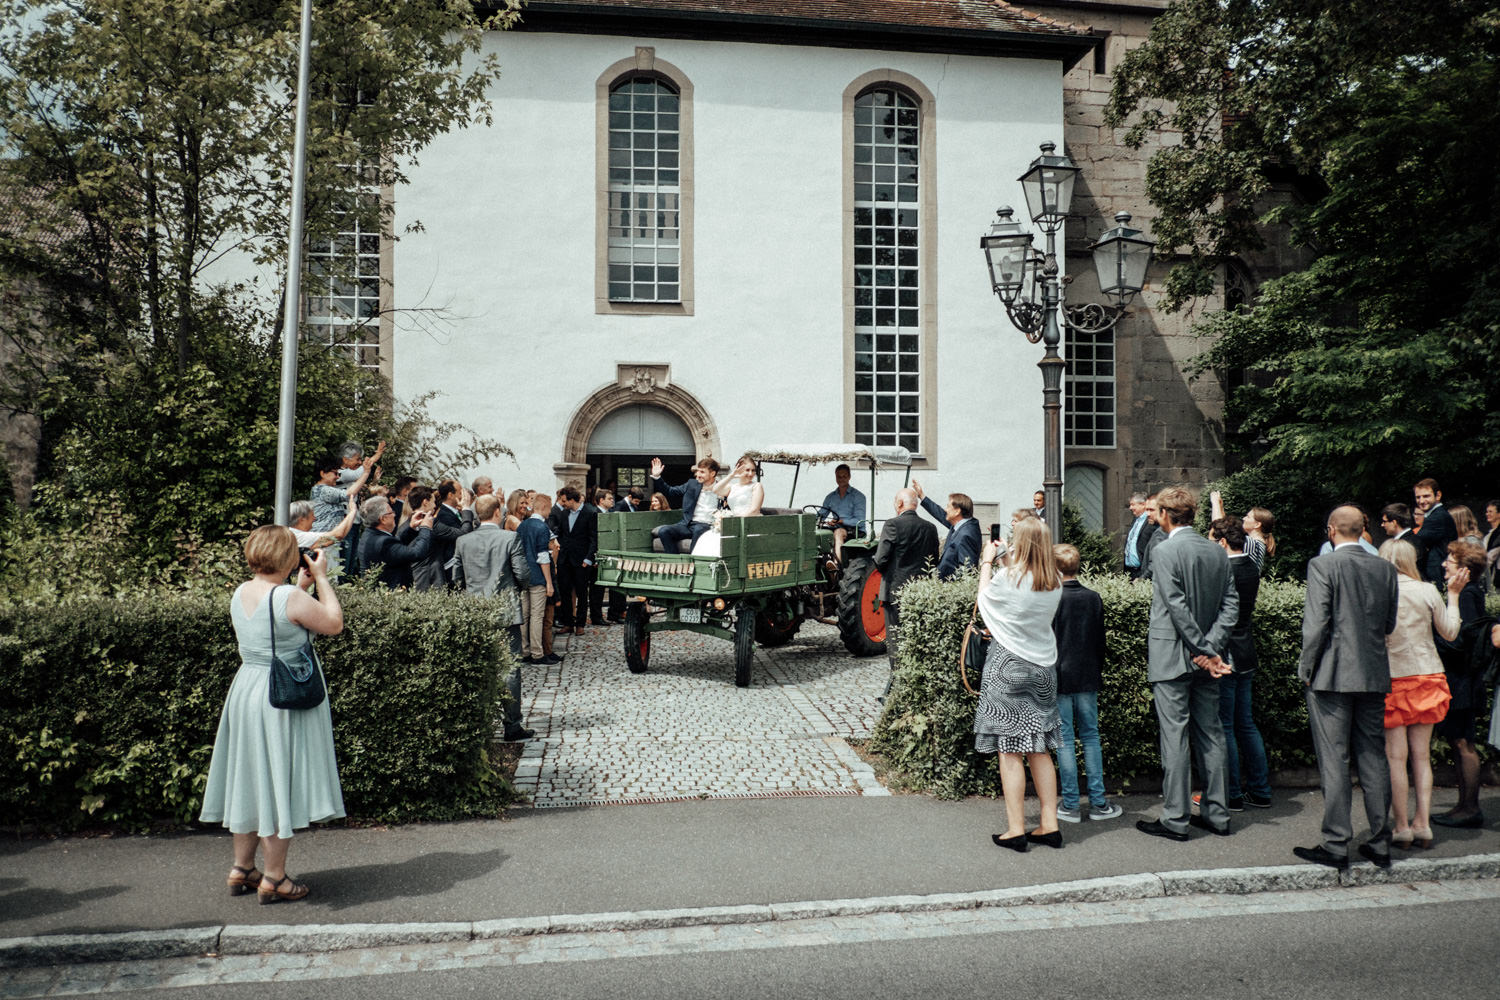 Zelthochzeit-Inspiration-Hochzeitsreportage-natürlich-Hessenhof-Coburg-Oberfranken-Aachen-Hochzeitsfotograf-Kevin Biberbach-KEVIN Fotografie-Junebug-Hochzeitswahn-071.jpg